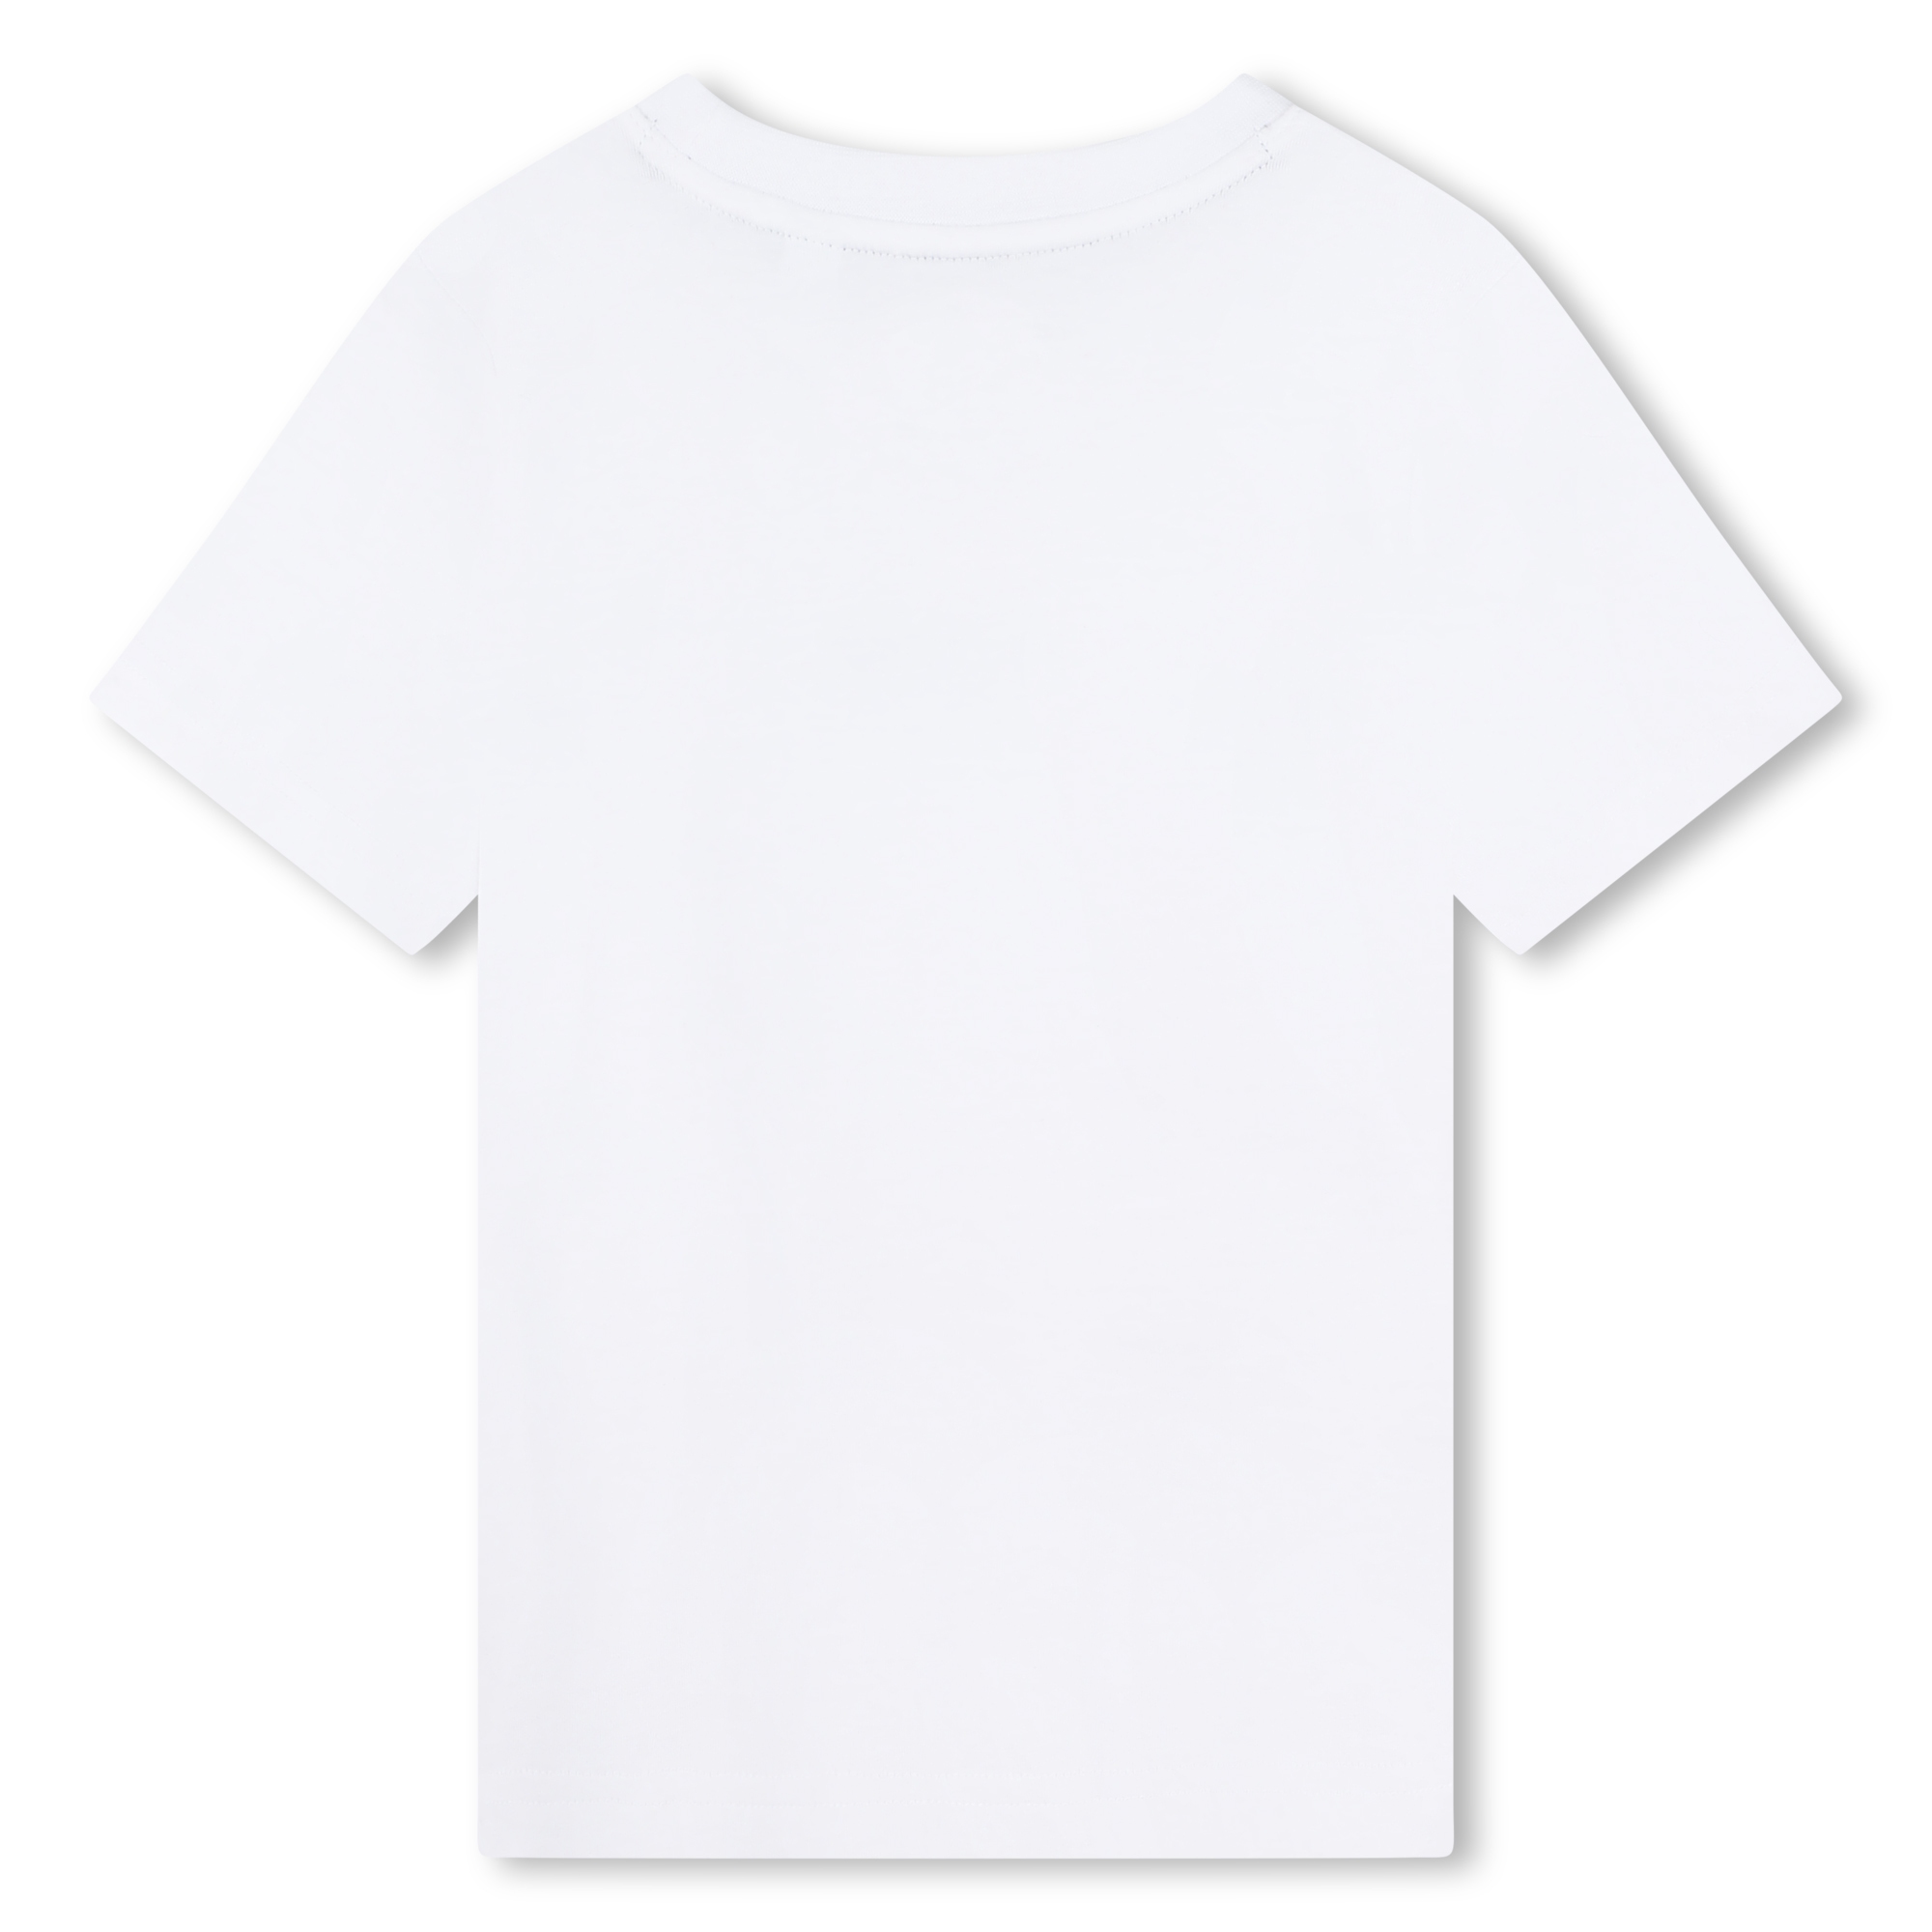 Camiseta manga corta algodón TIMBERLAND para NIÑO